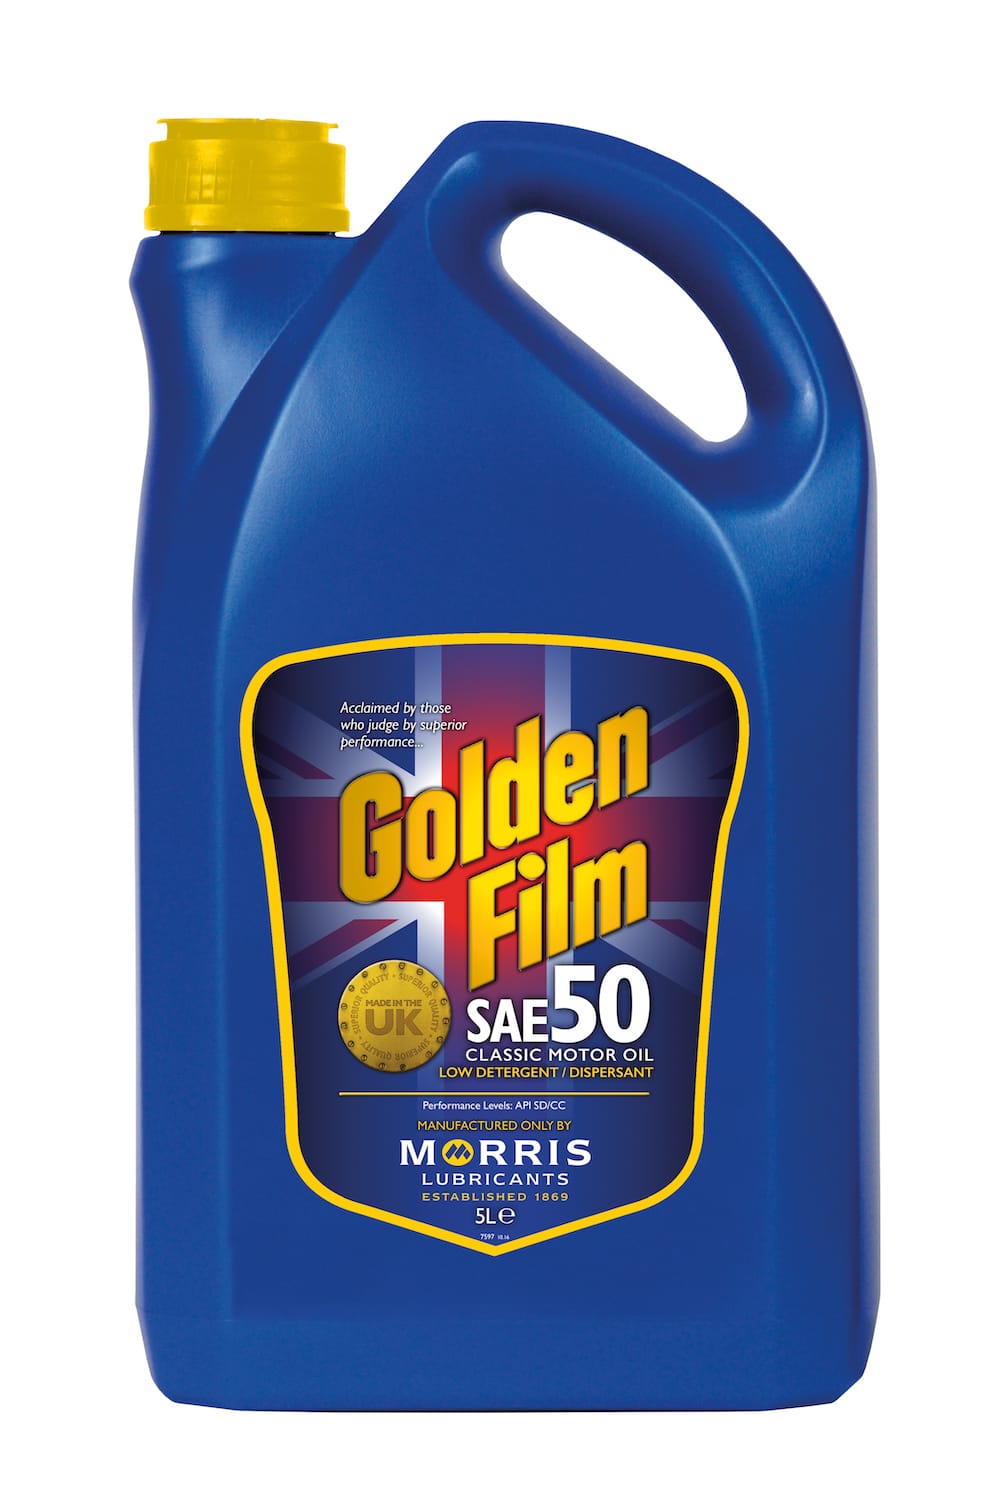 Morris Golden Film SAE 50